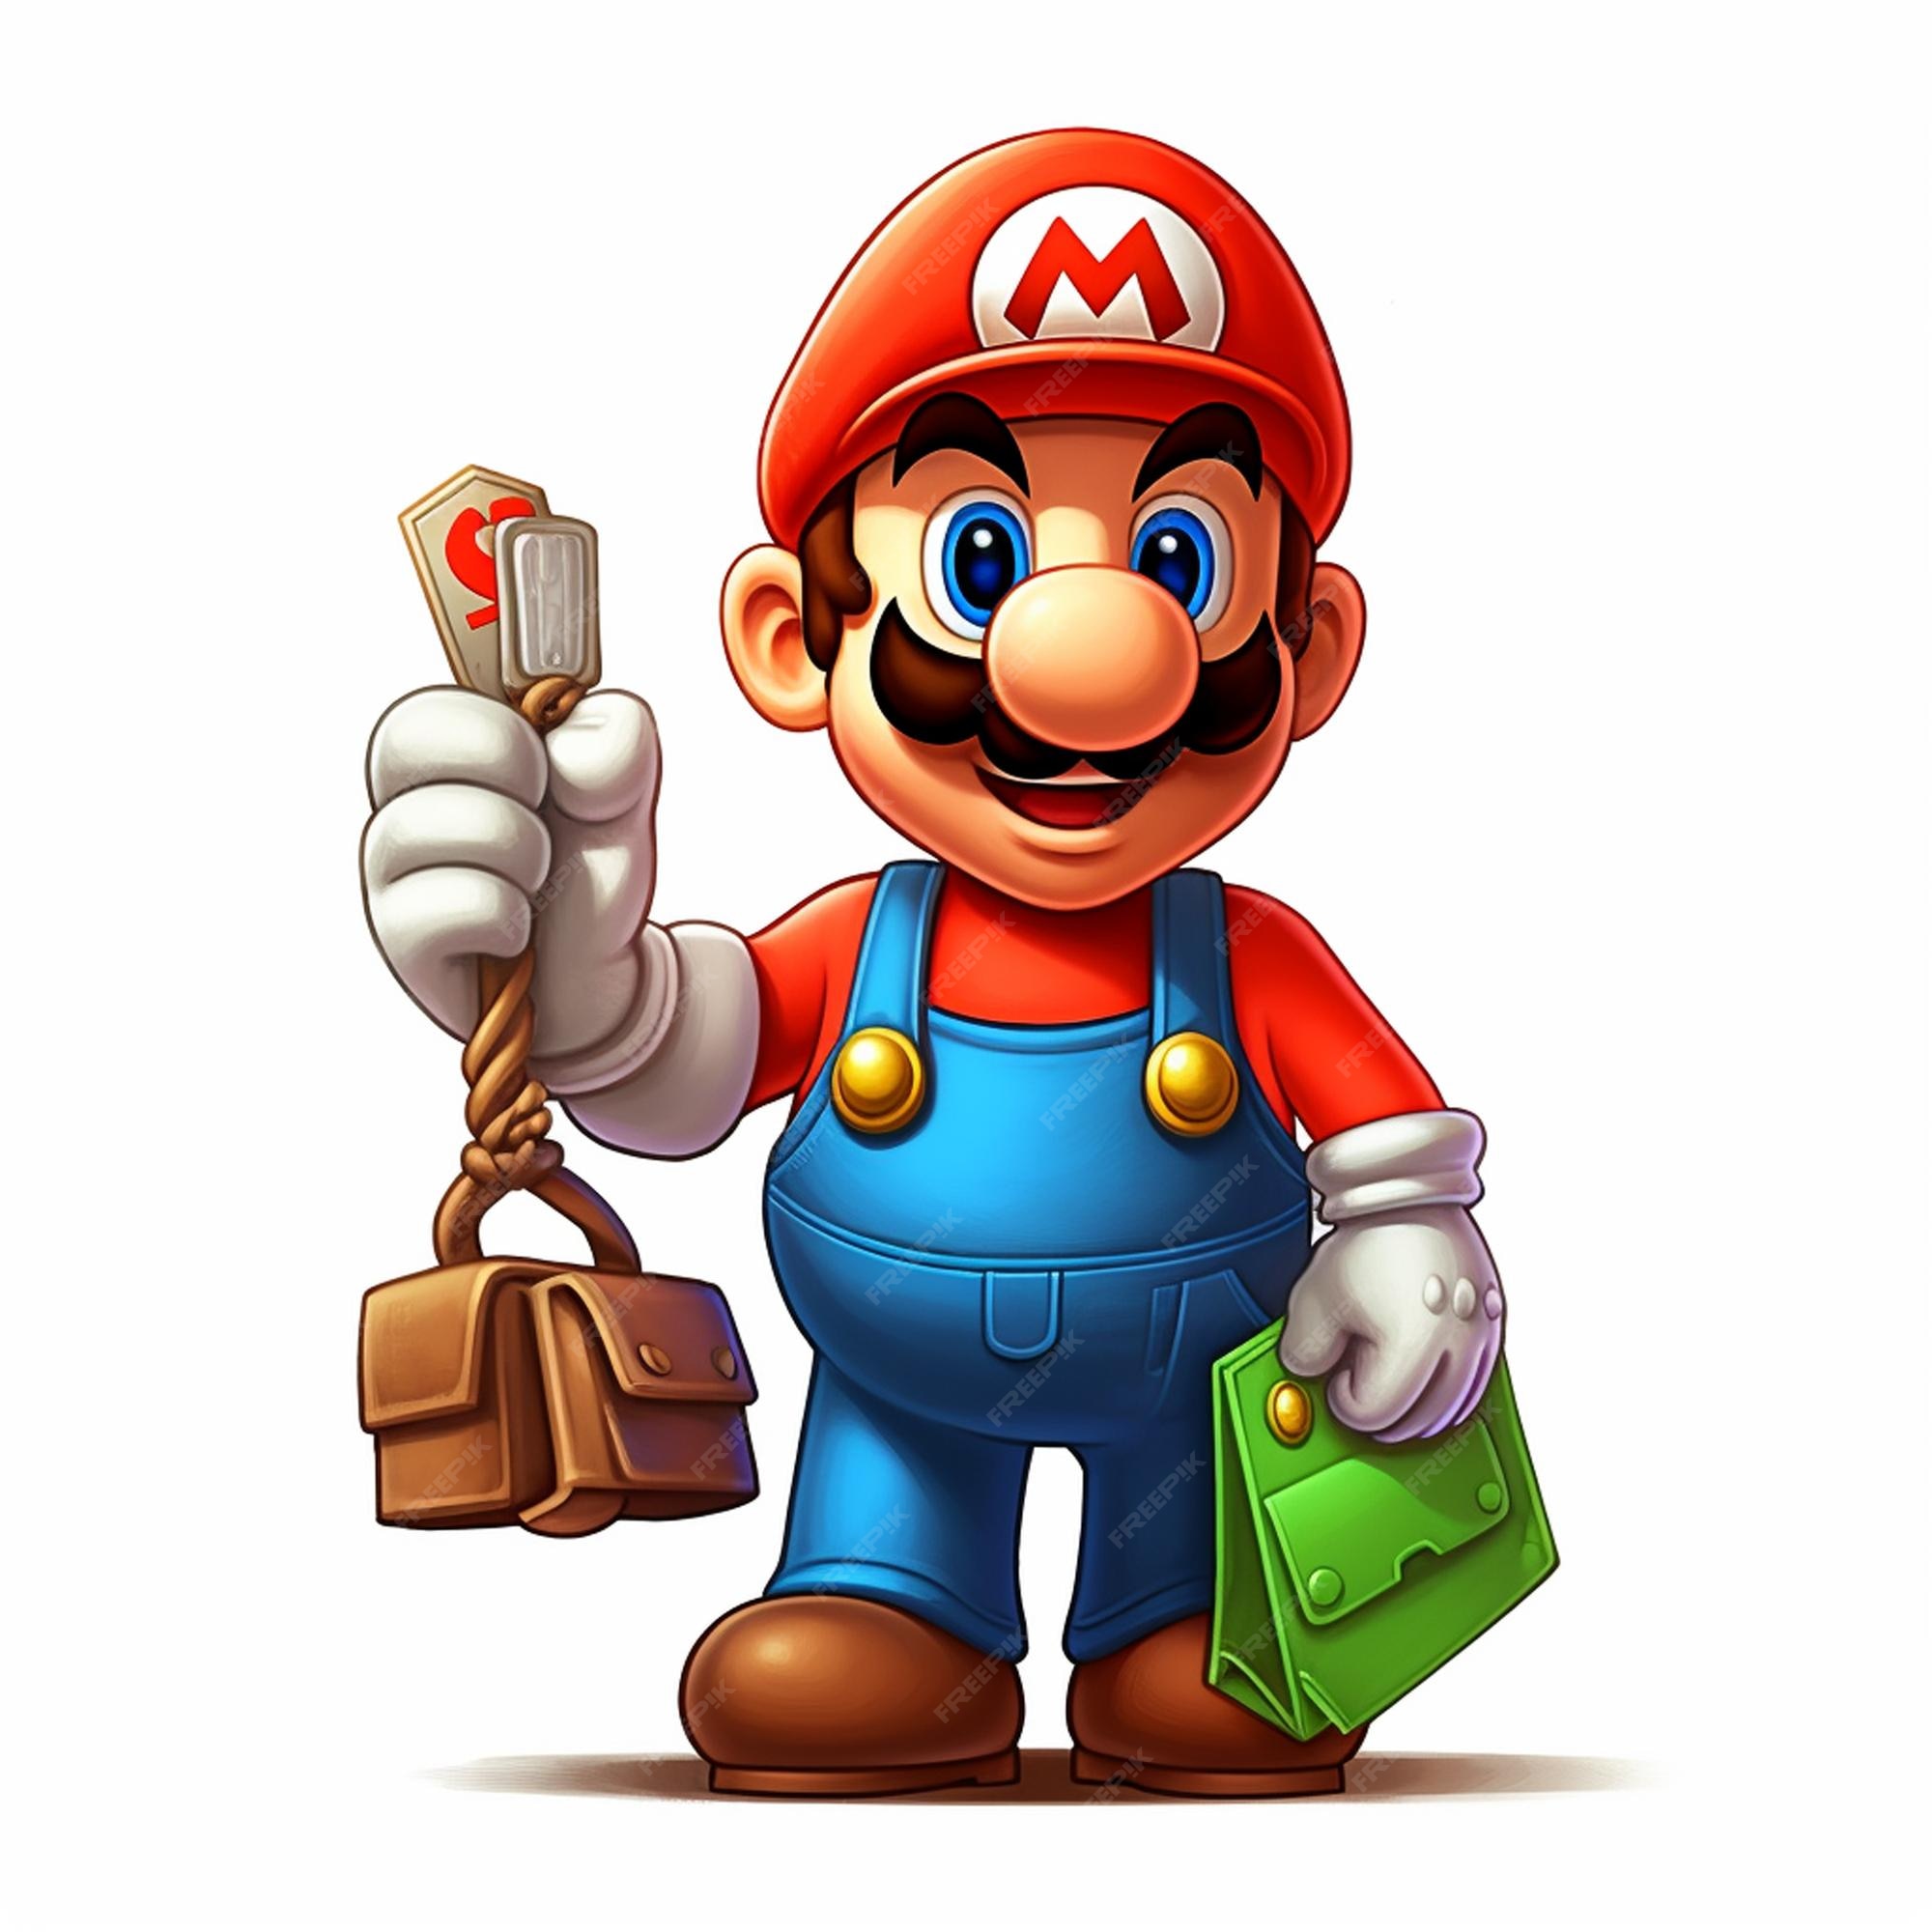 Mario Bros Imagens – Download Grátis no Freepik